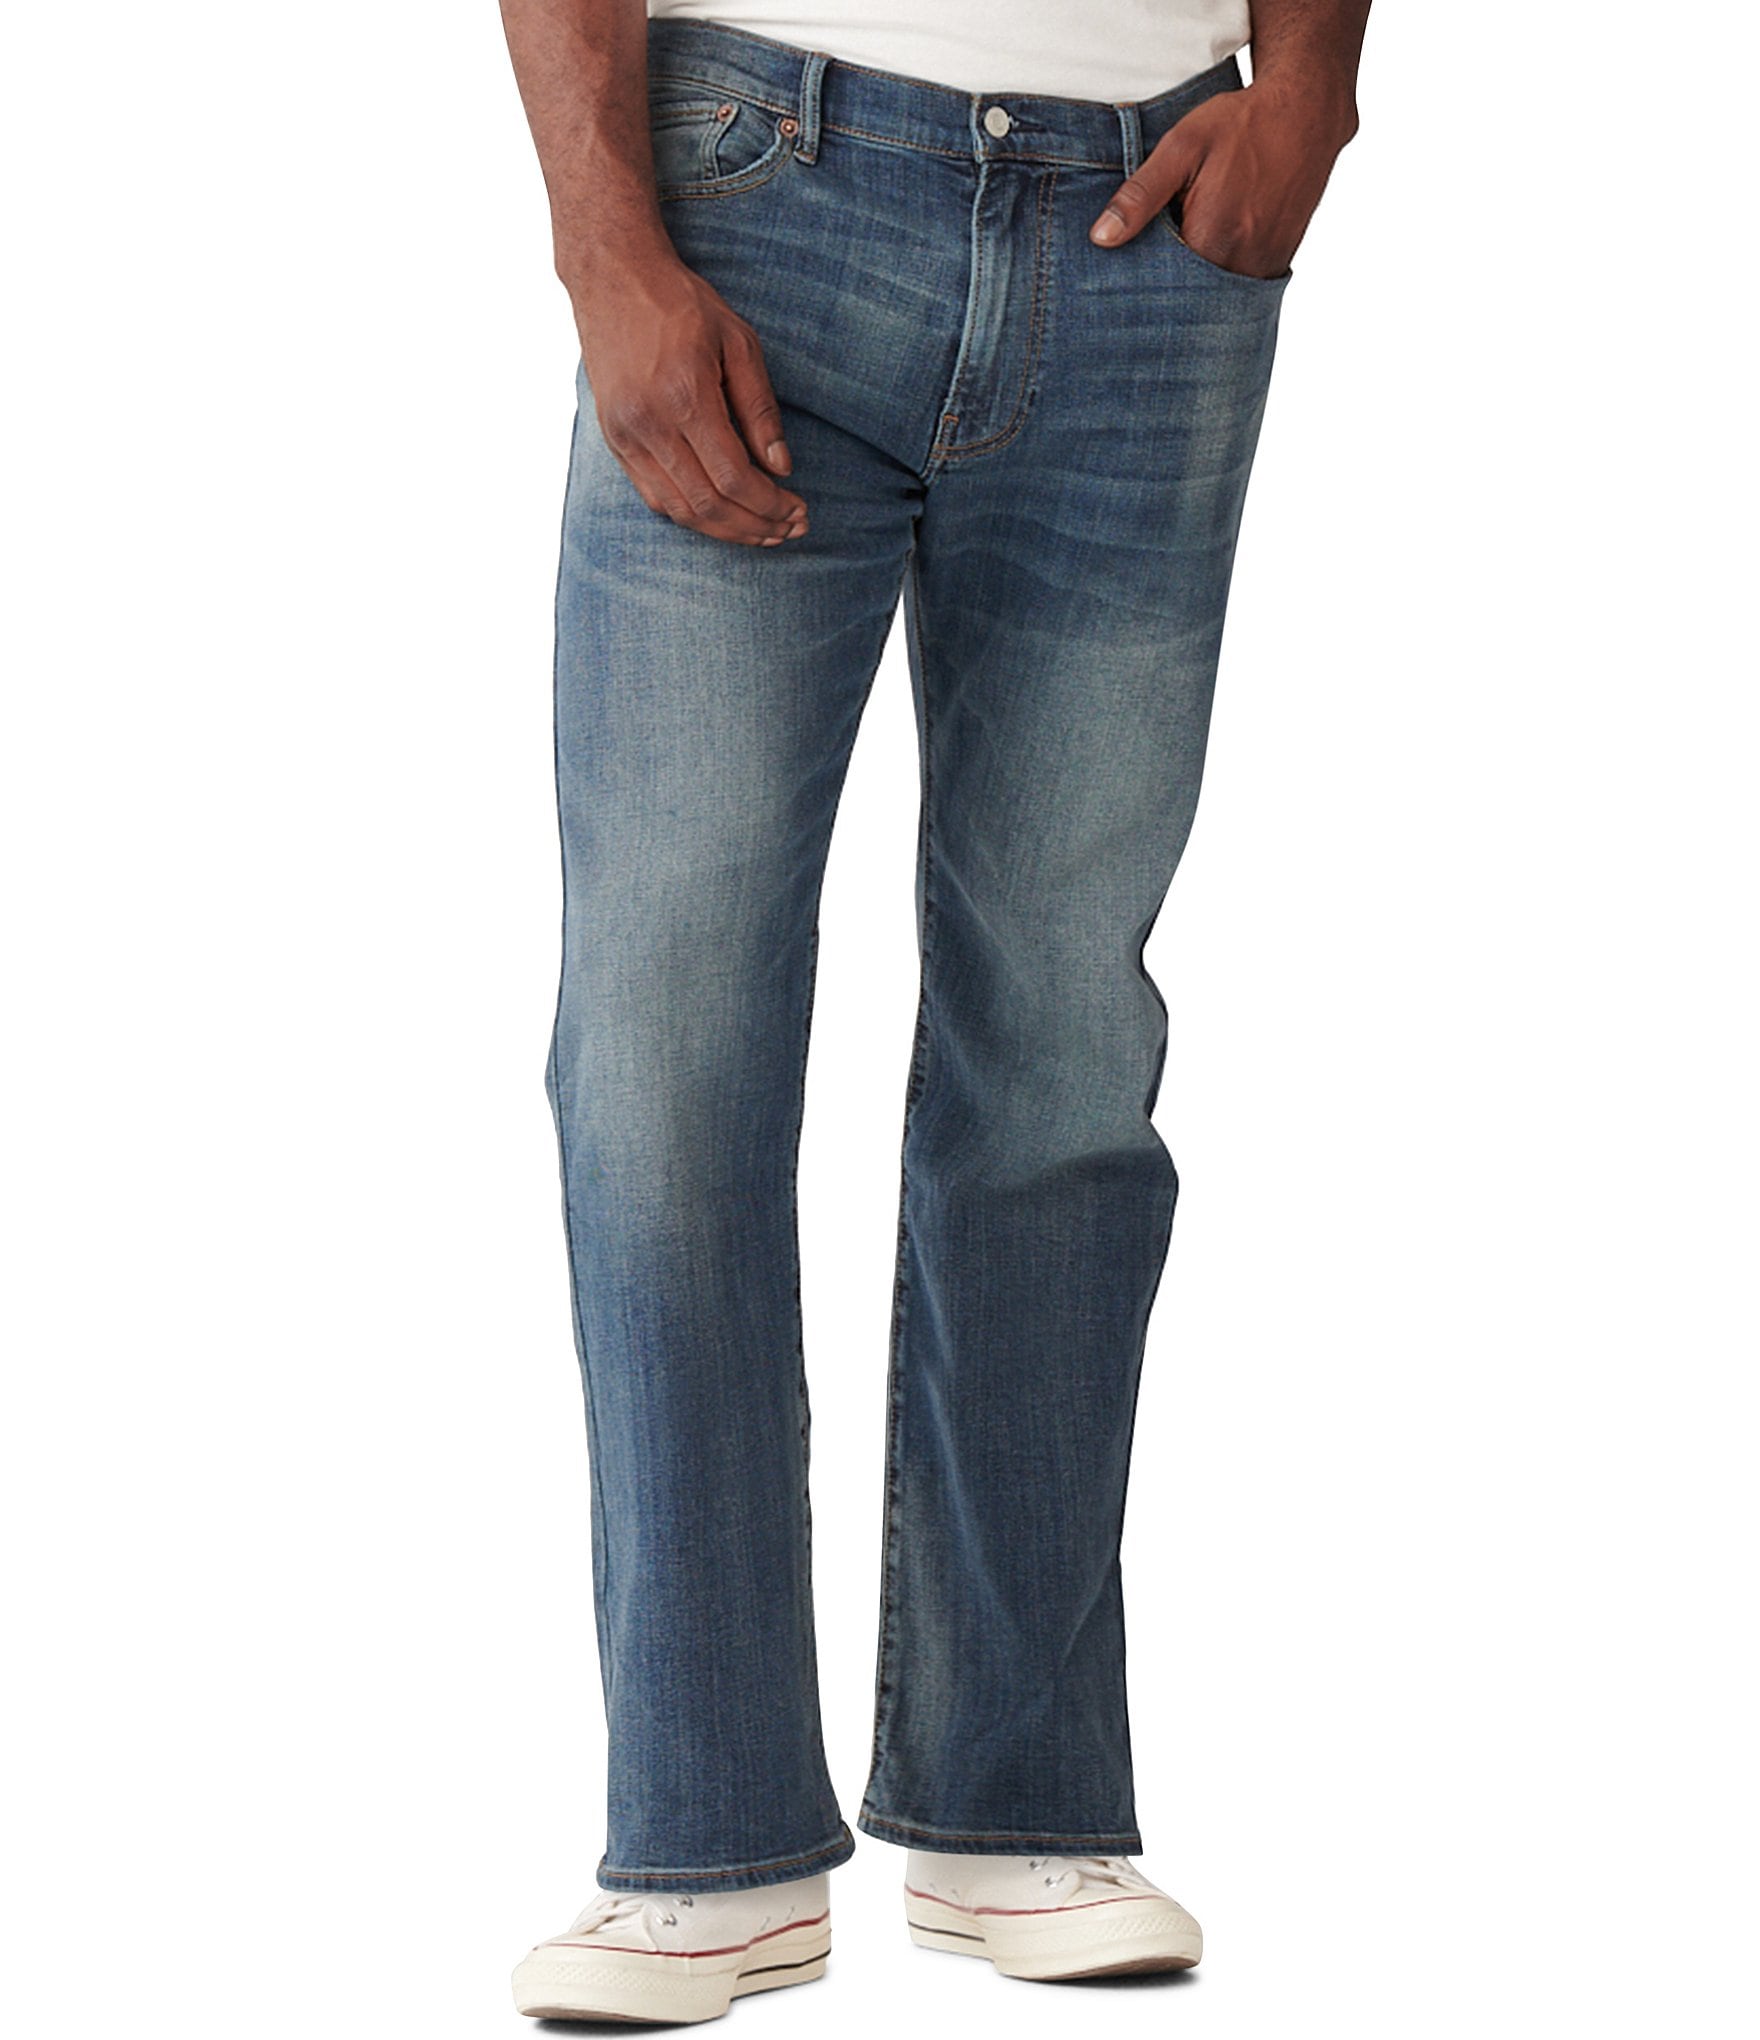 dillards lucky brand men's jeans